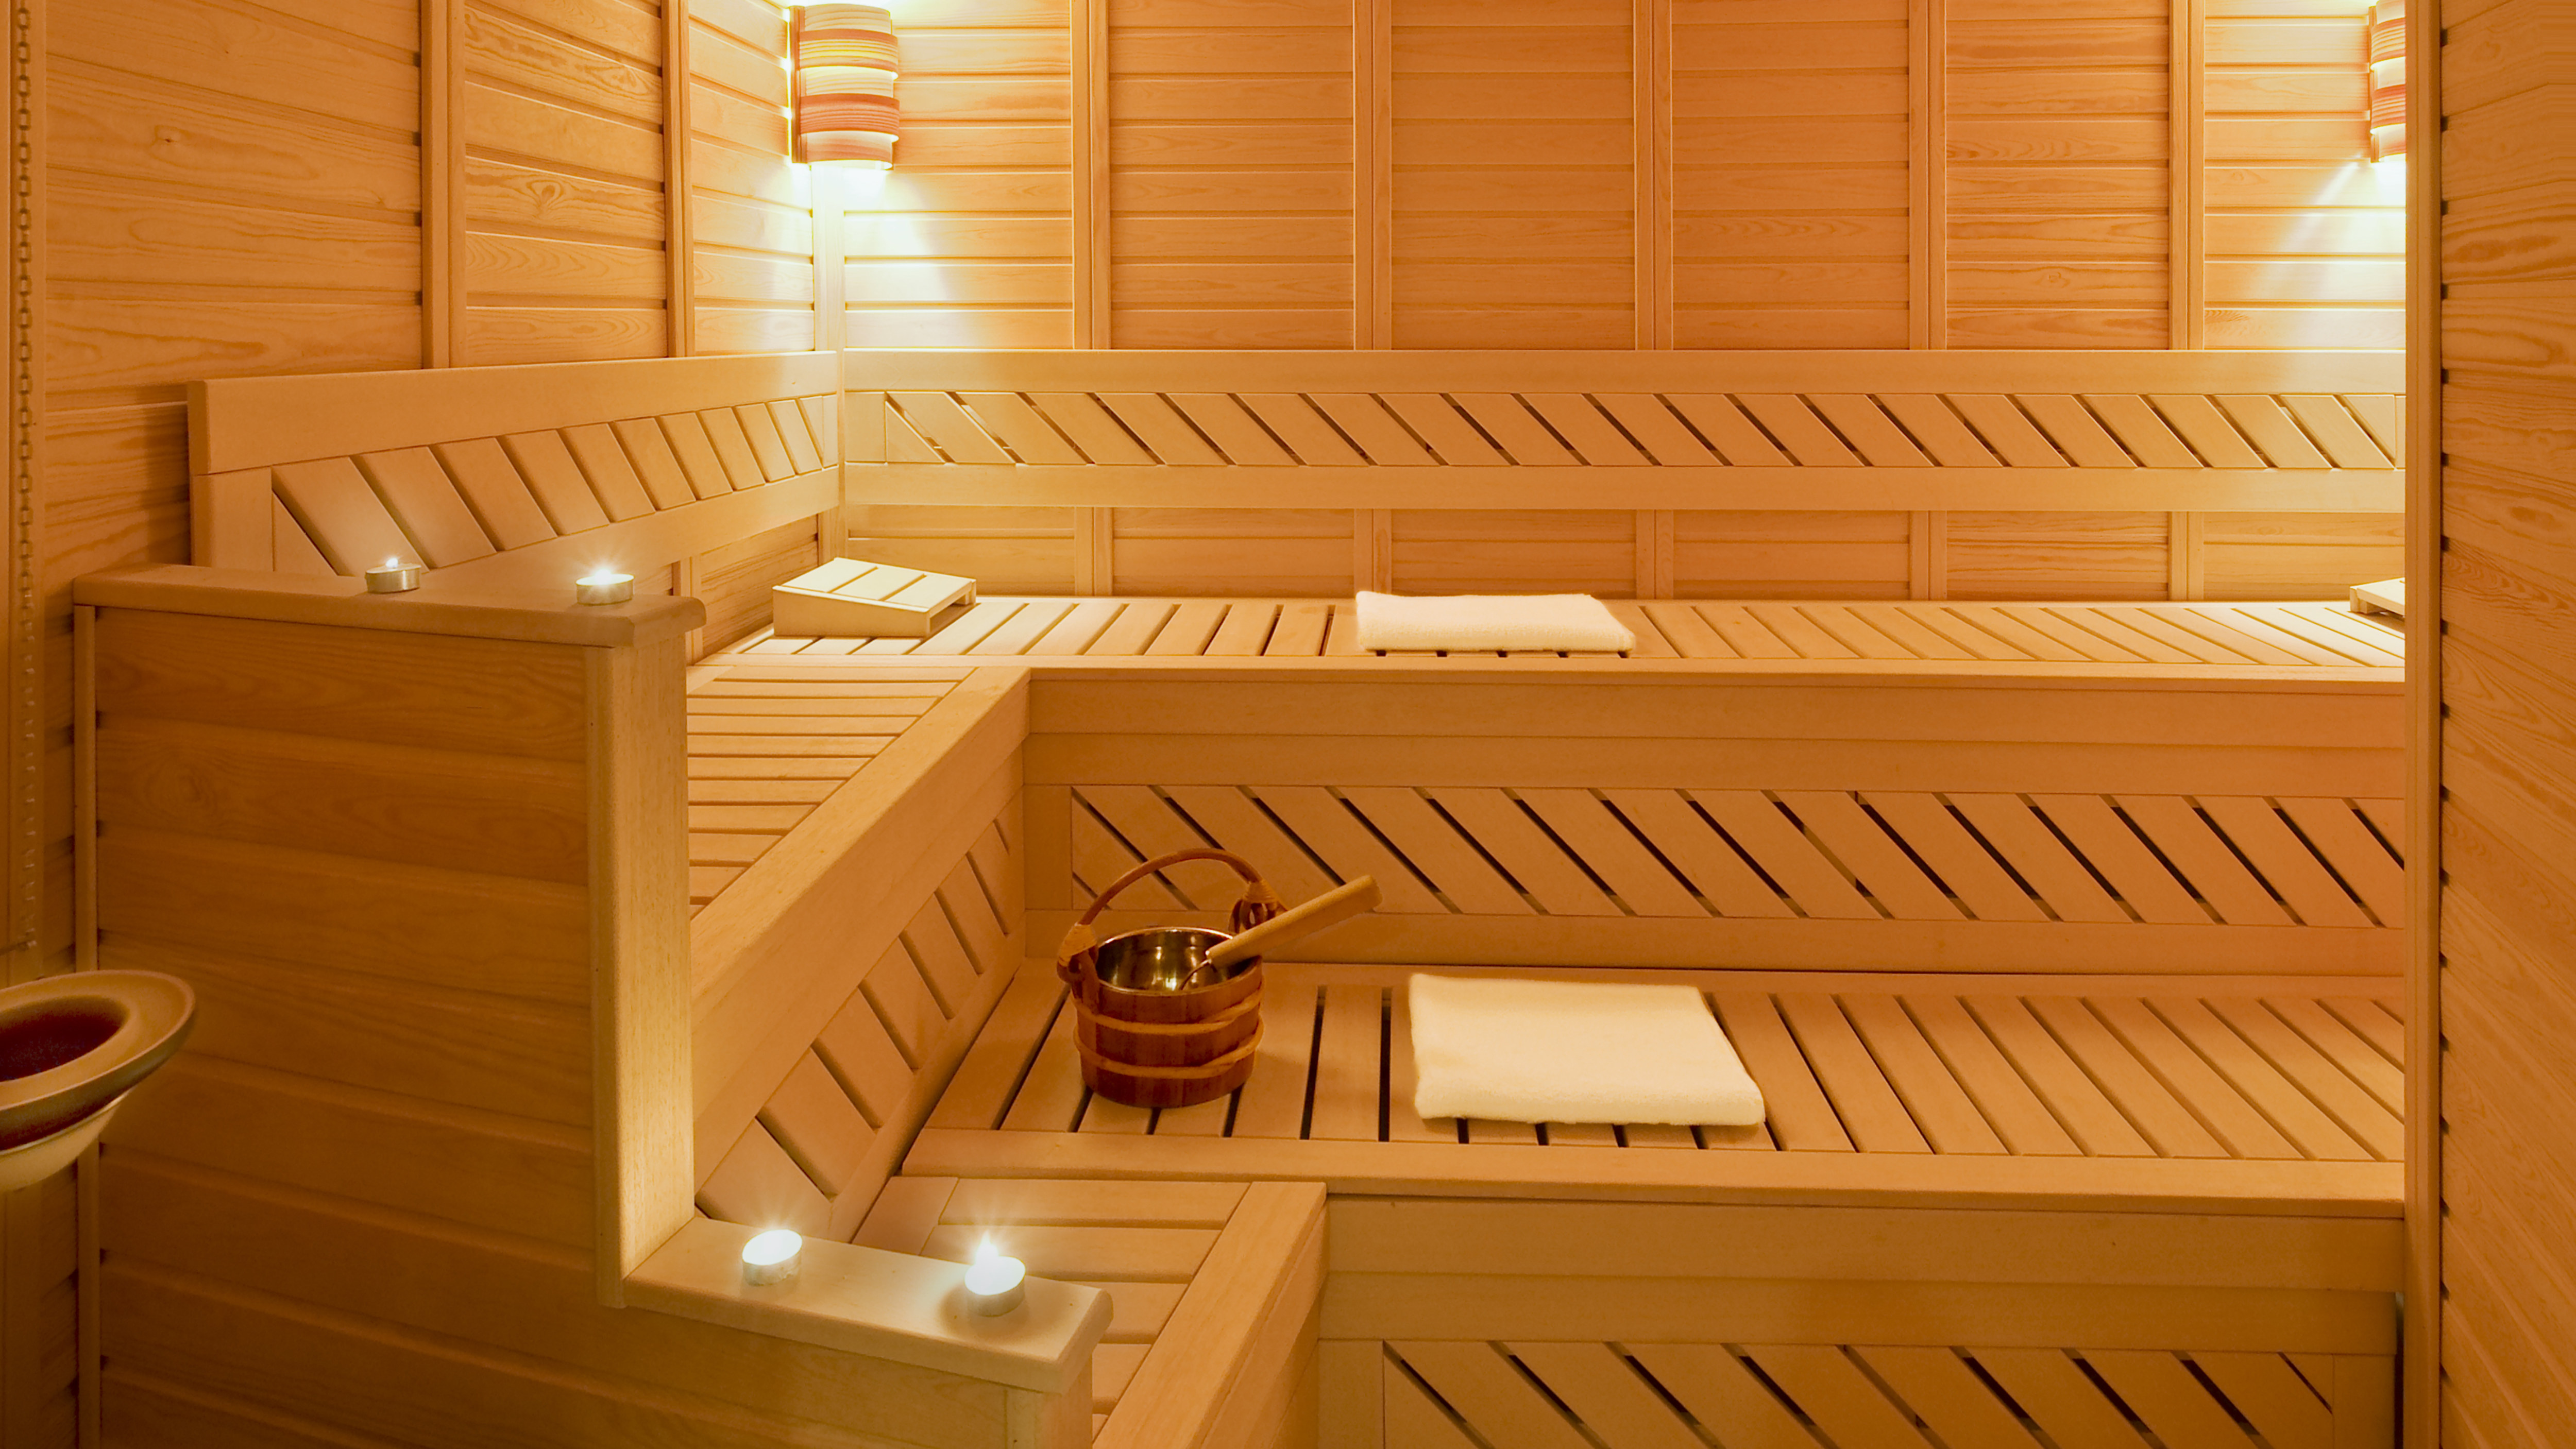 Finish sauna at the spa